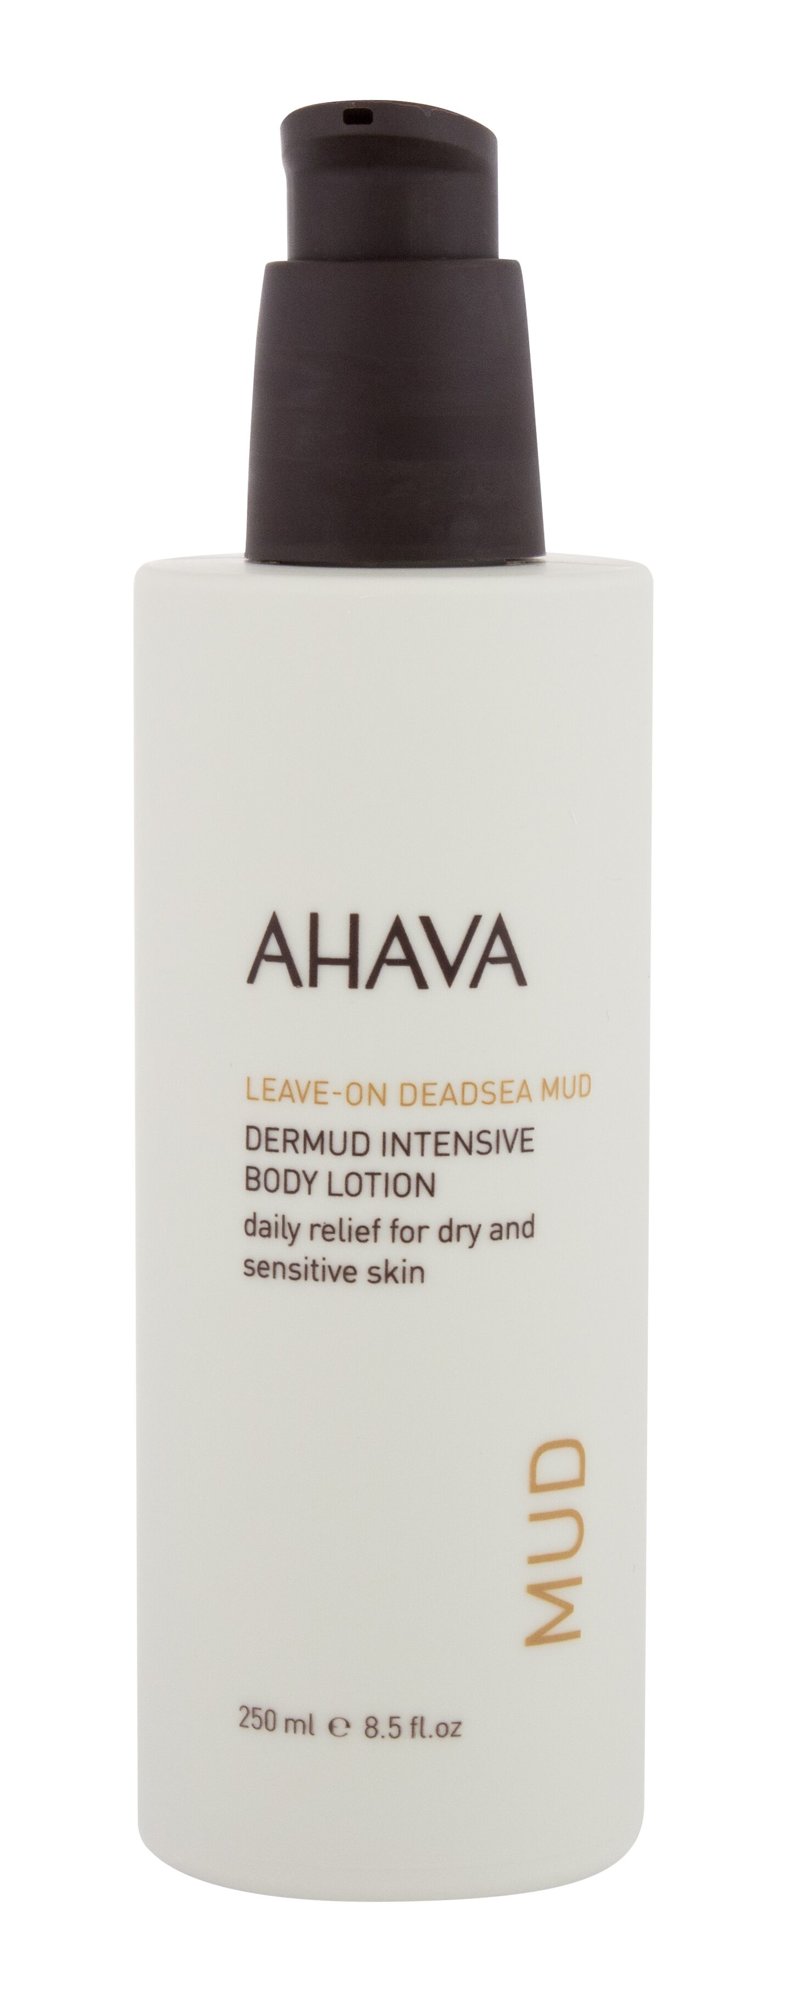 AHAVA Deadsea Mud Leave-On Deadsea Mud Dermud Intensive kūno losjonas